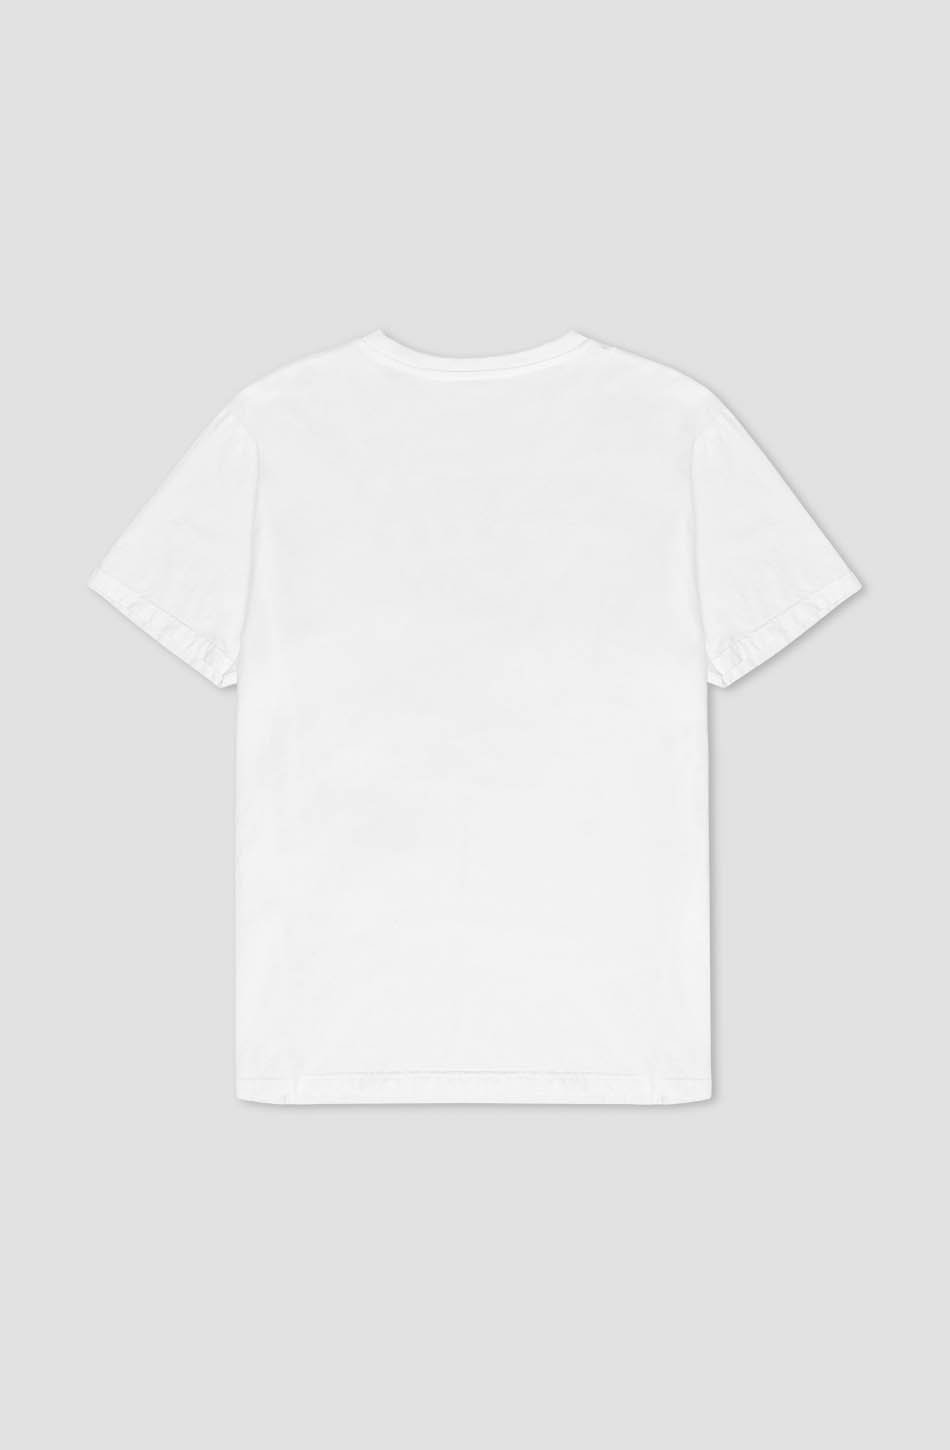 Washed Fresh White T-Shirt